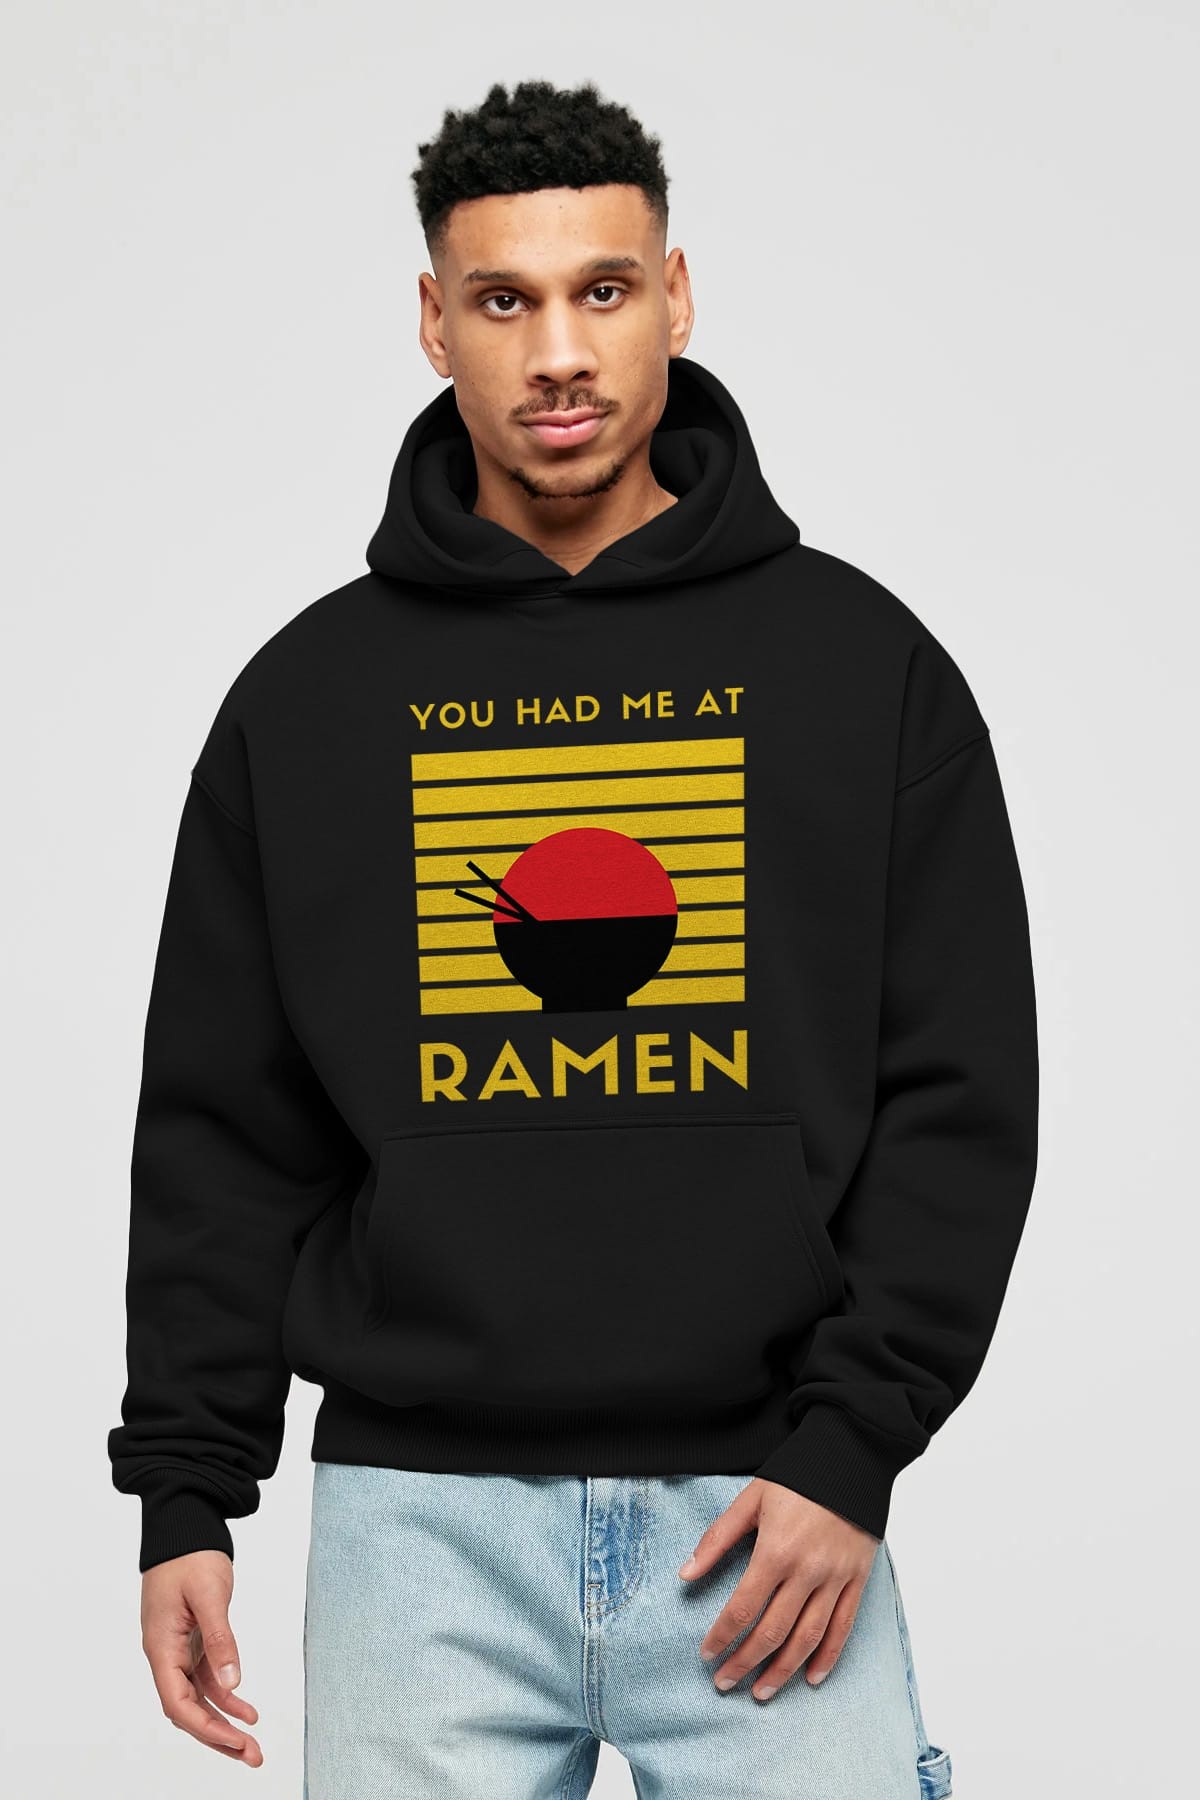 You Had me at Ramen Yazılı Ön Baskılı Oversize Hoodie Kapüşonlu Sweatshirt Erkek Kadın Unisex